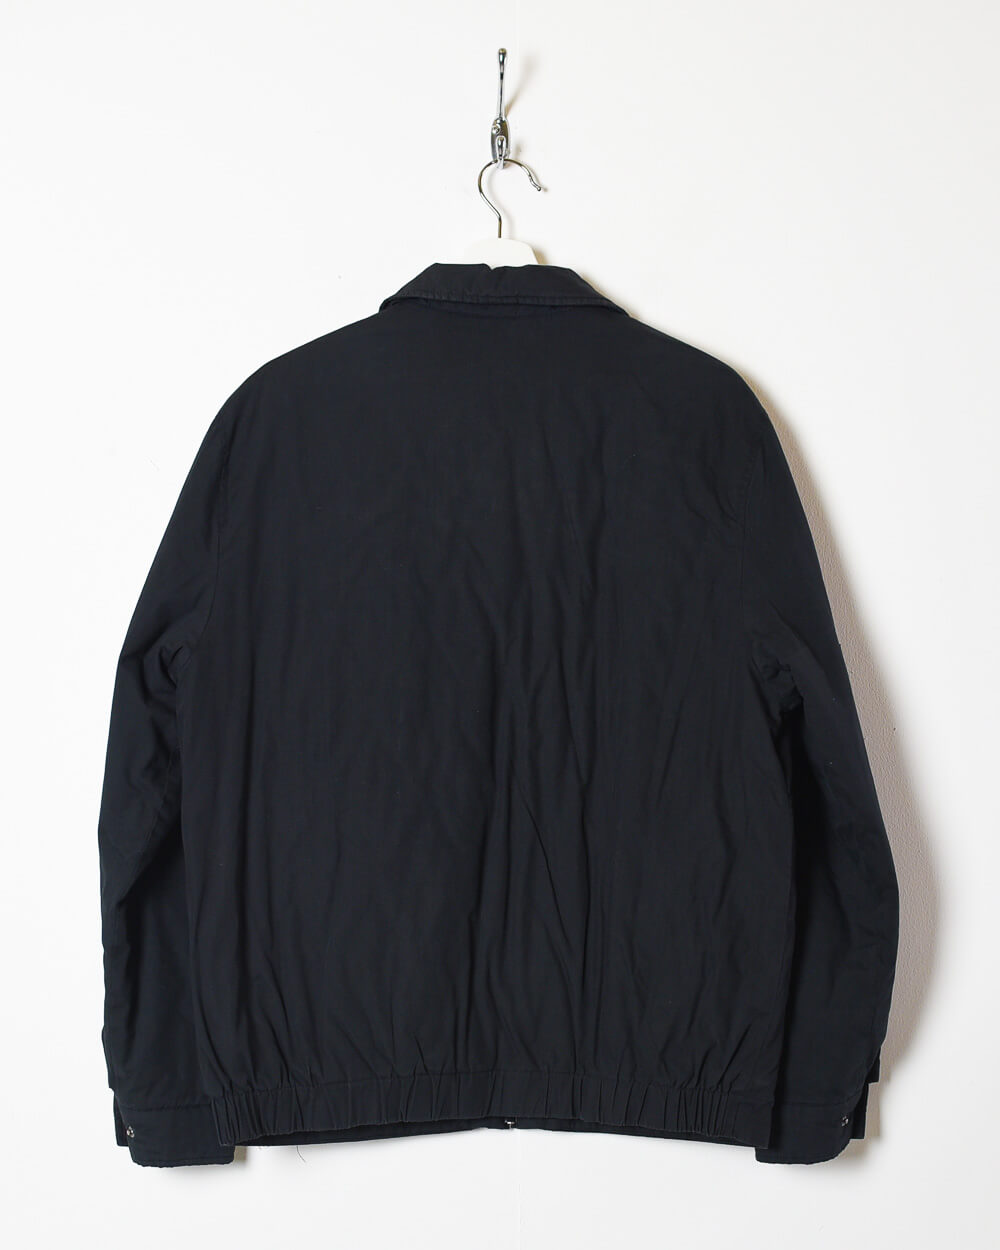 Black Yves Saint Laurent Harrington Jacket - Medium